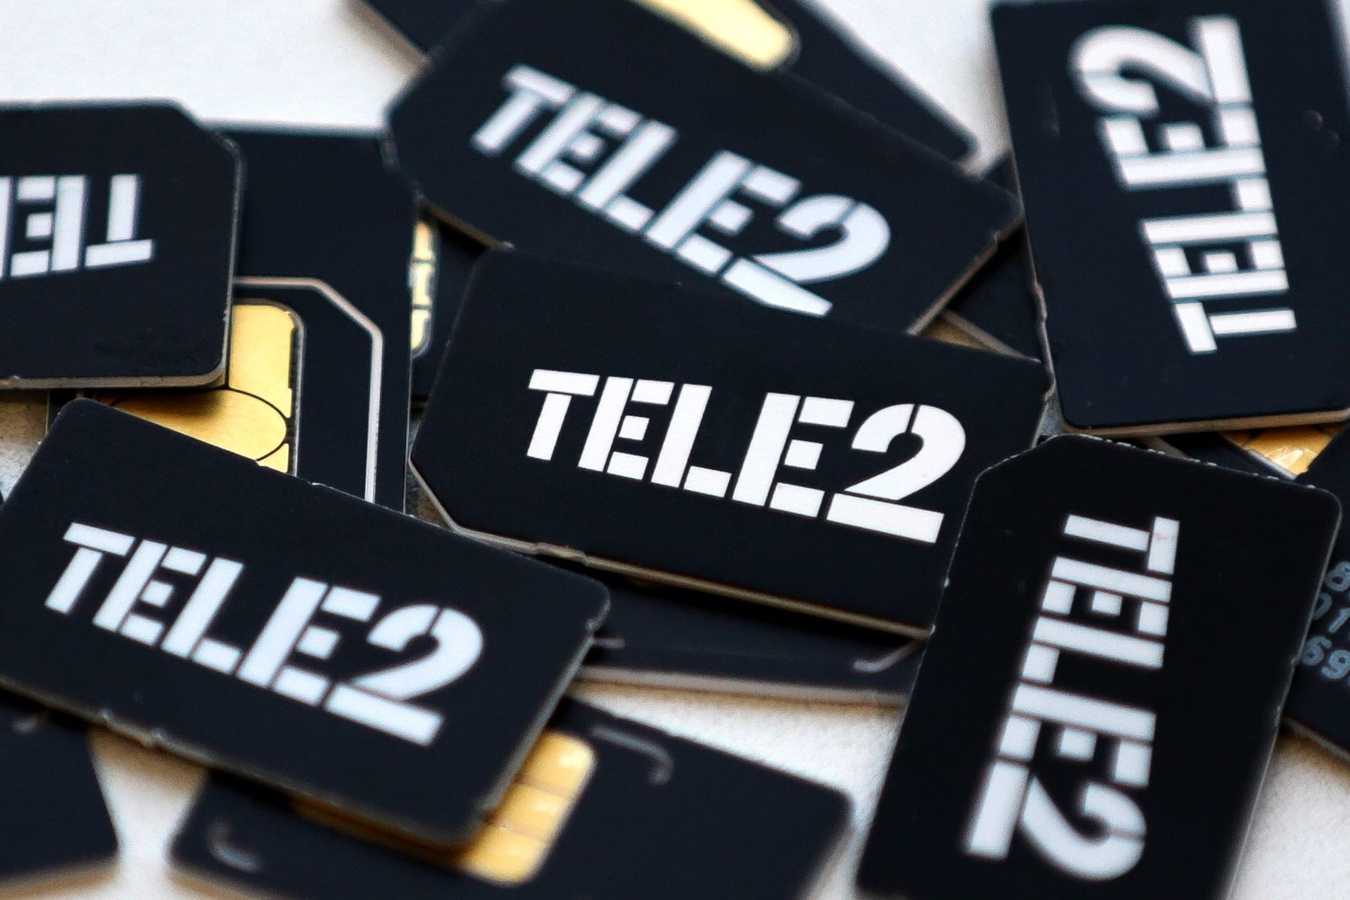 Шведская Tele2 AB намерениа продать "Казахтелекому" свою долю в СП